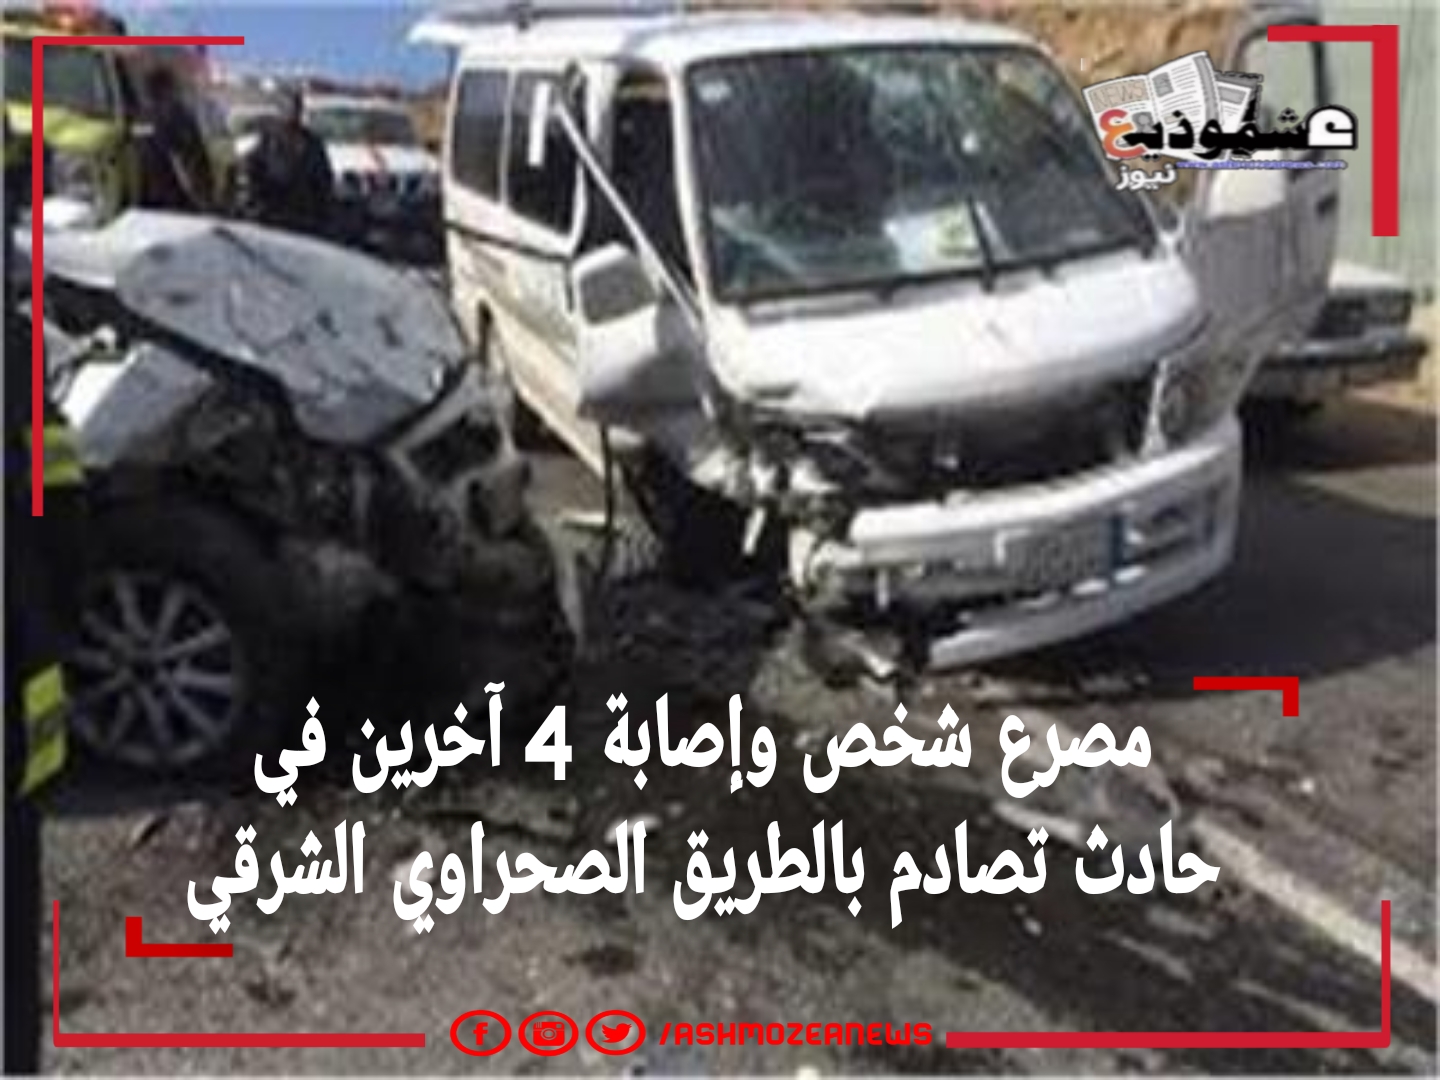 مصرع شخص وإصابة 4 آخرين في حادث تصادم بالطريق الصحراوي الشرقي